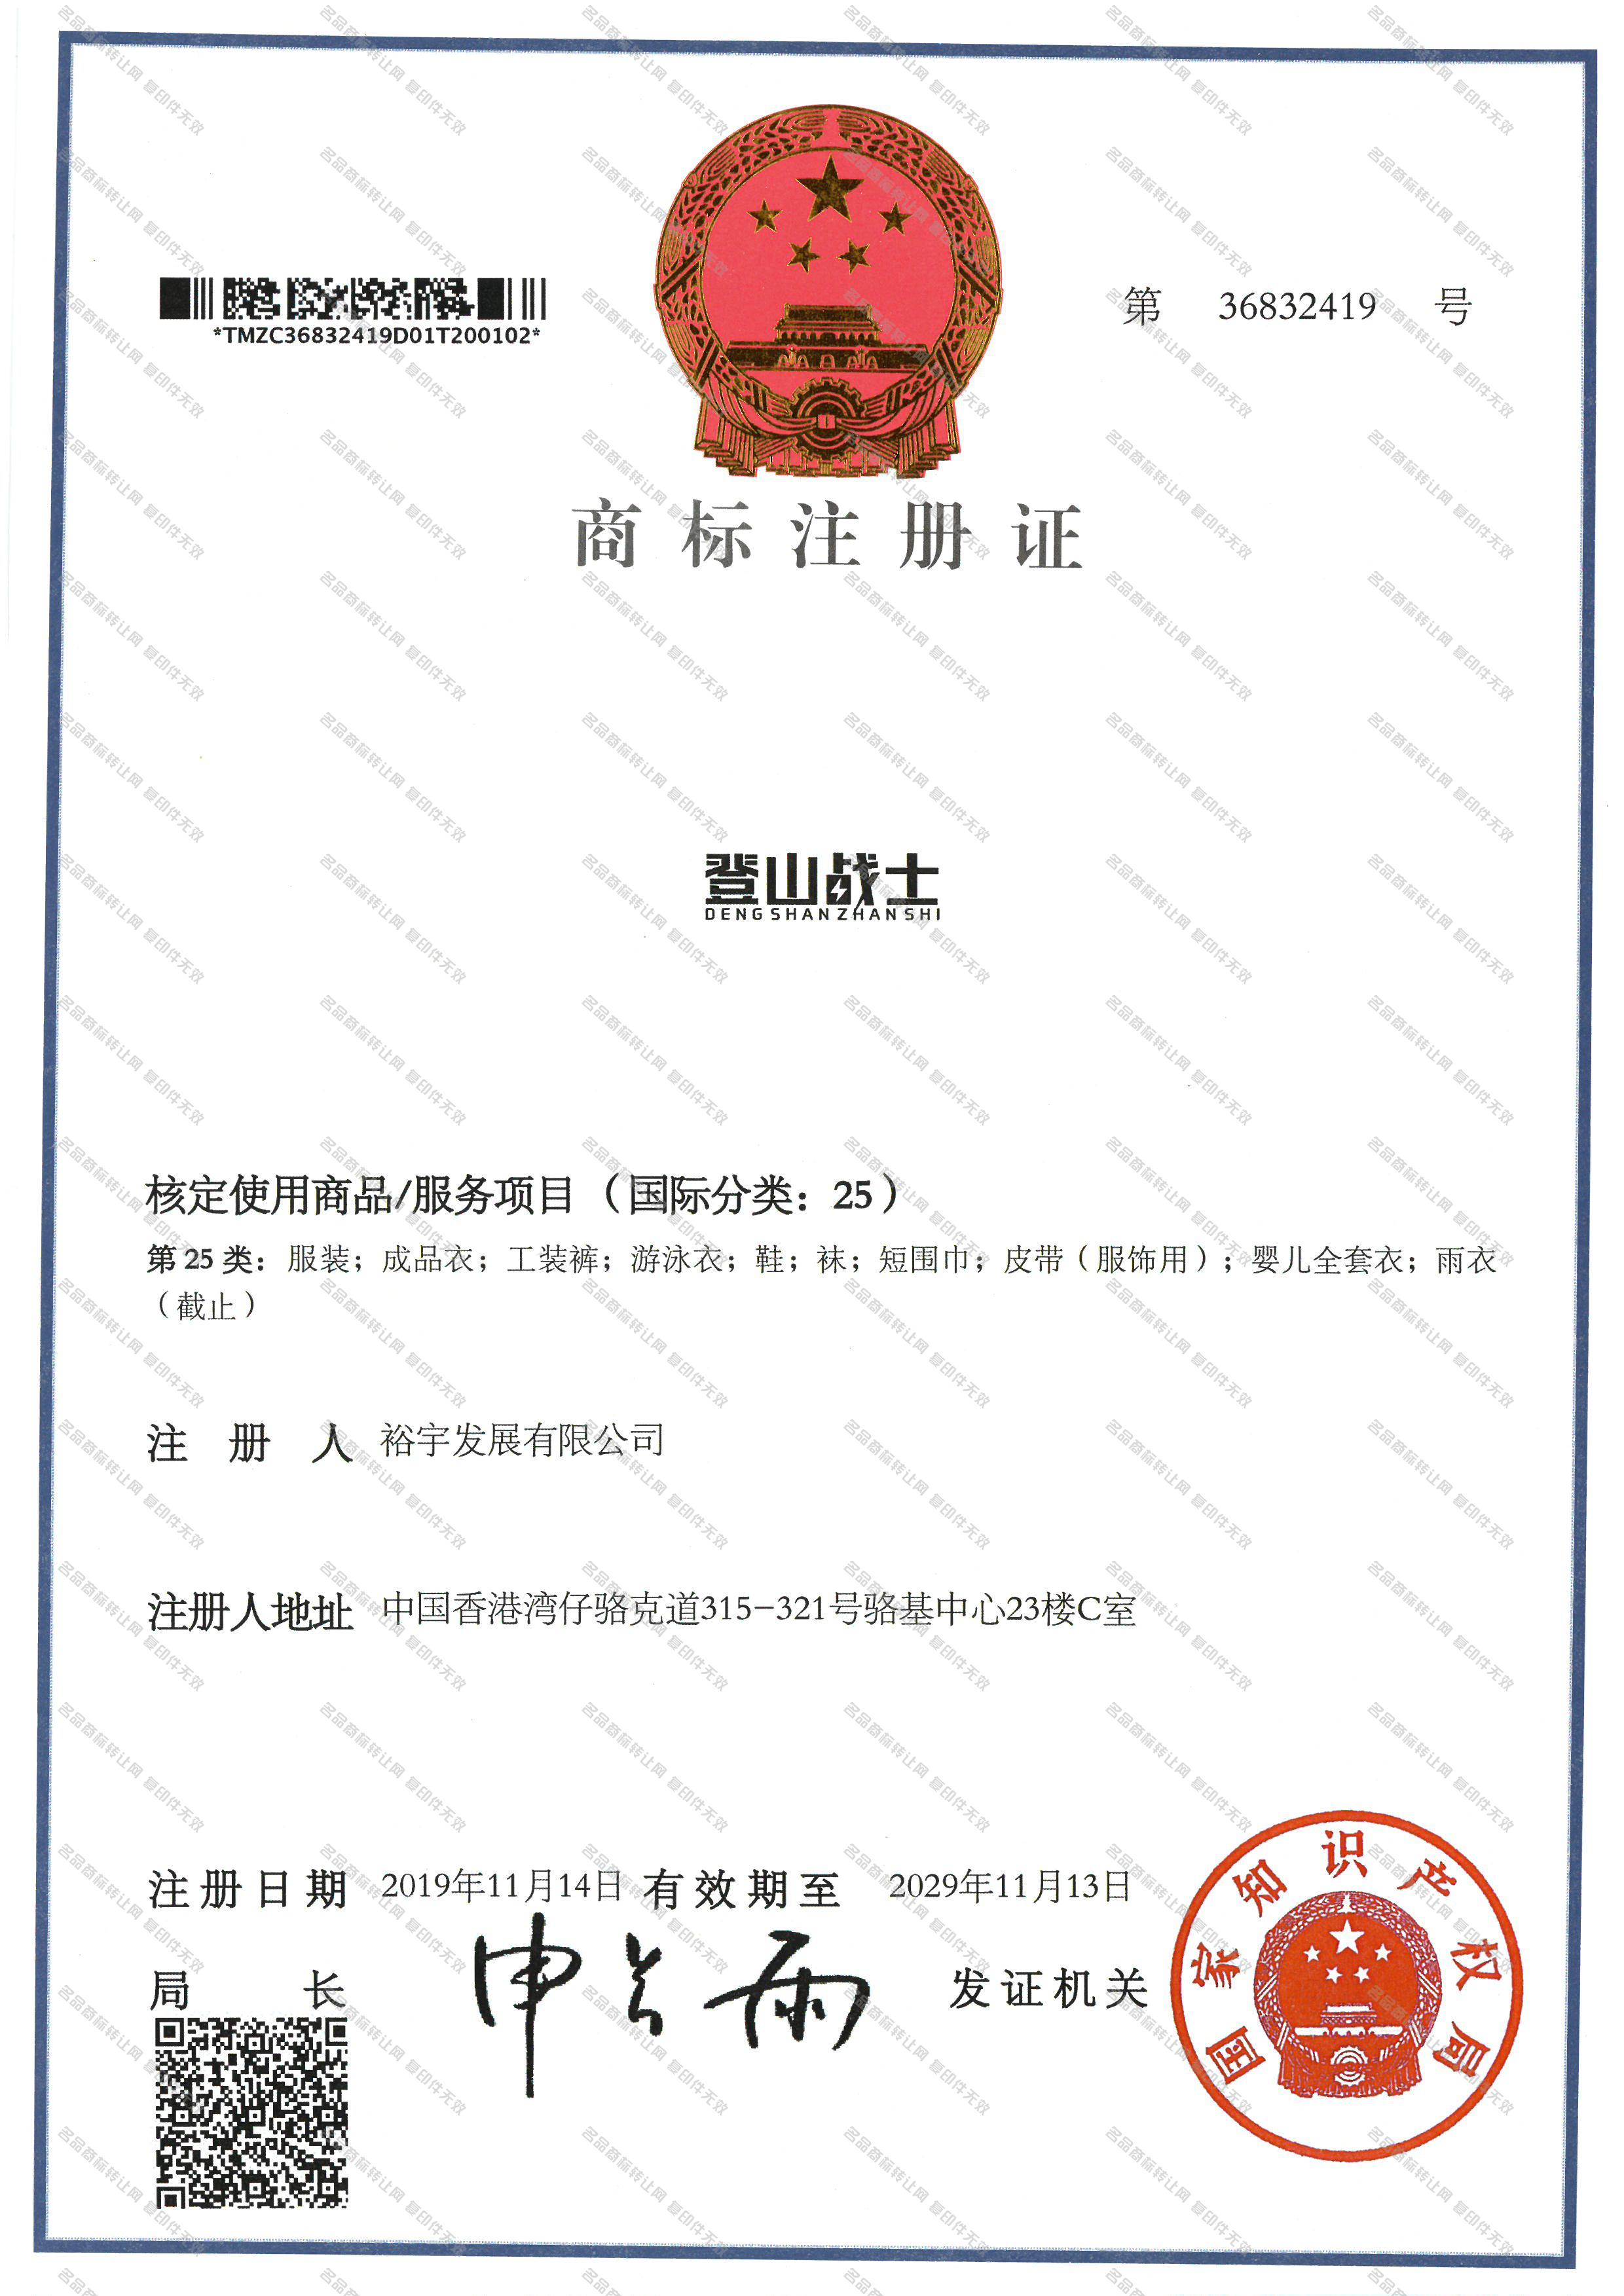 登山战士 DENGSHANZHANSHI注册证